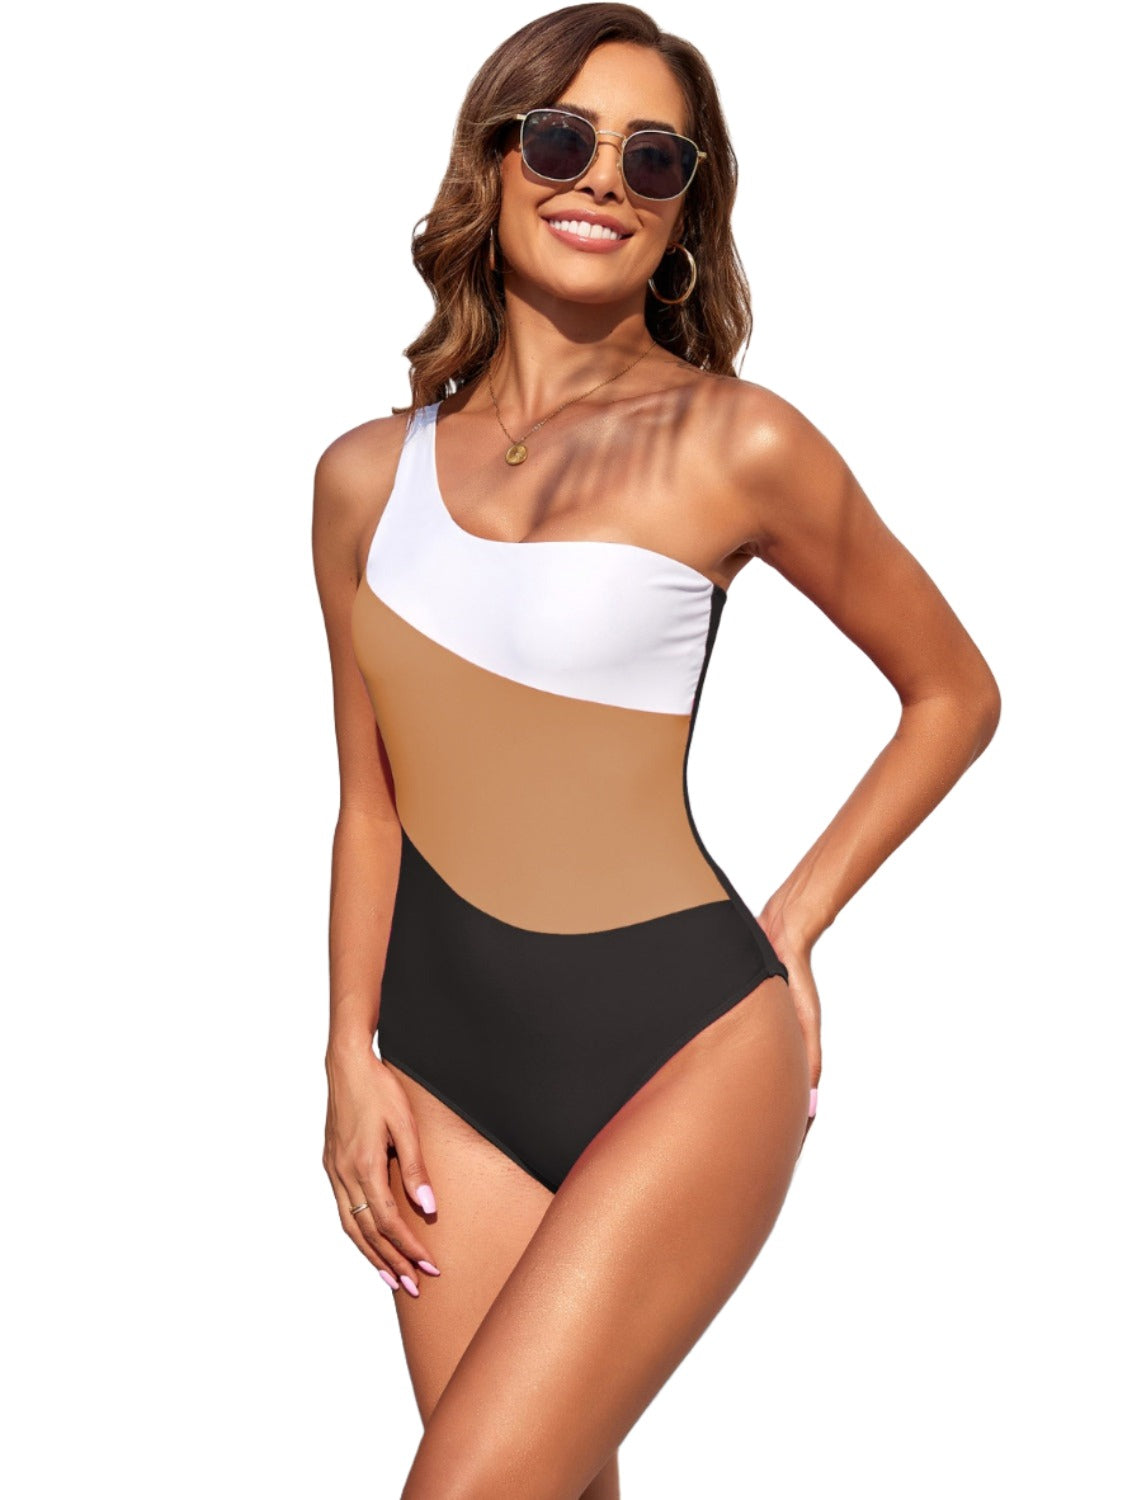 TEEK - 3 -Tone Color Block One Shoulder Swimsuit SWIMWEAR TEEK Trend Camel S 